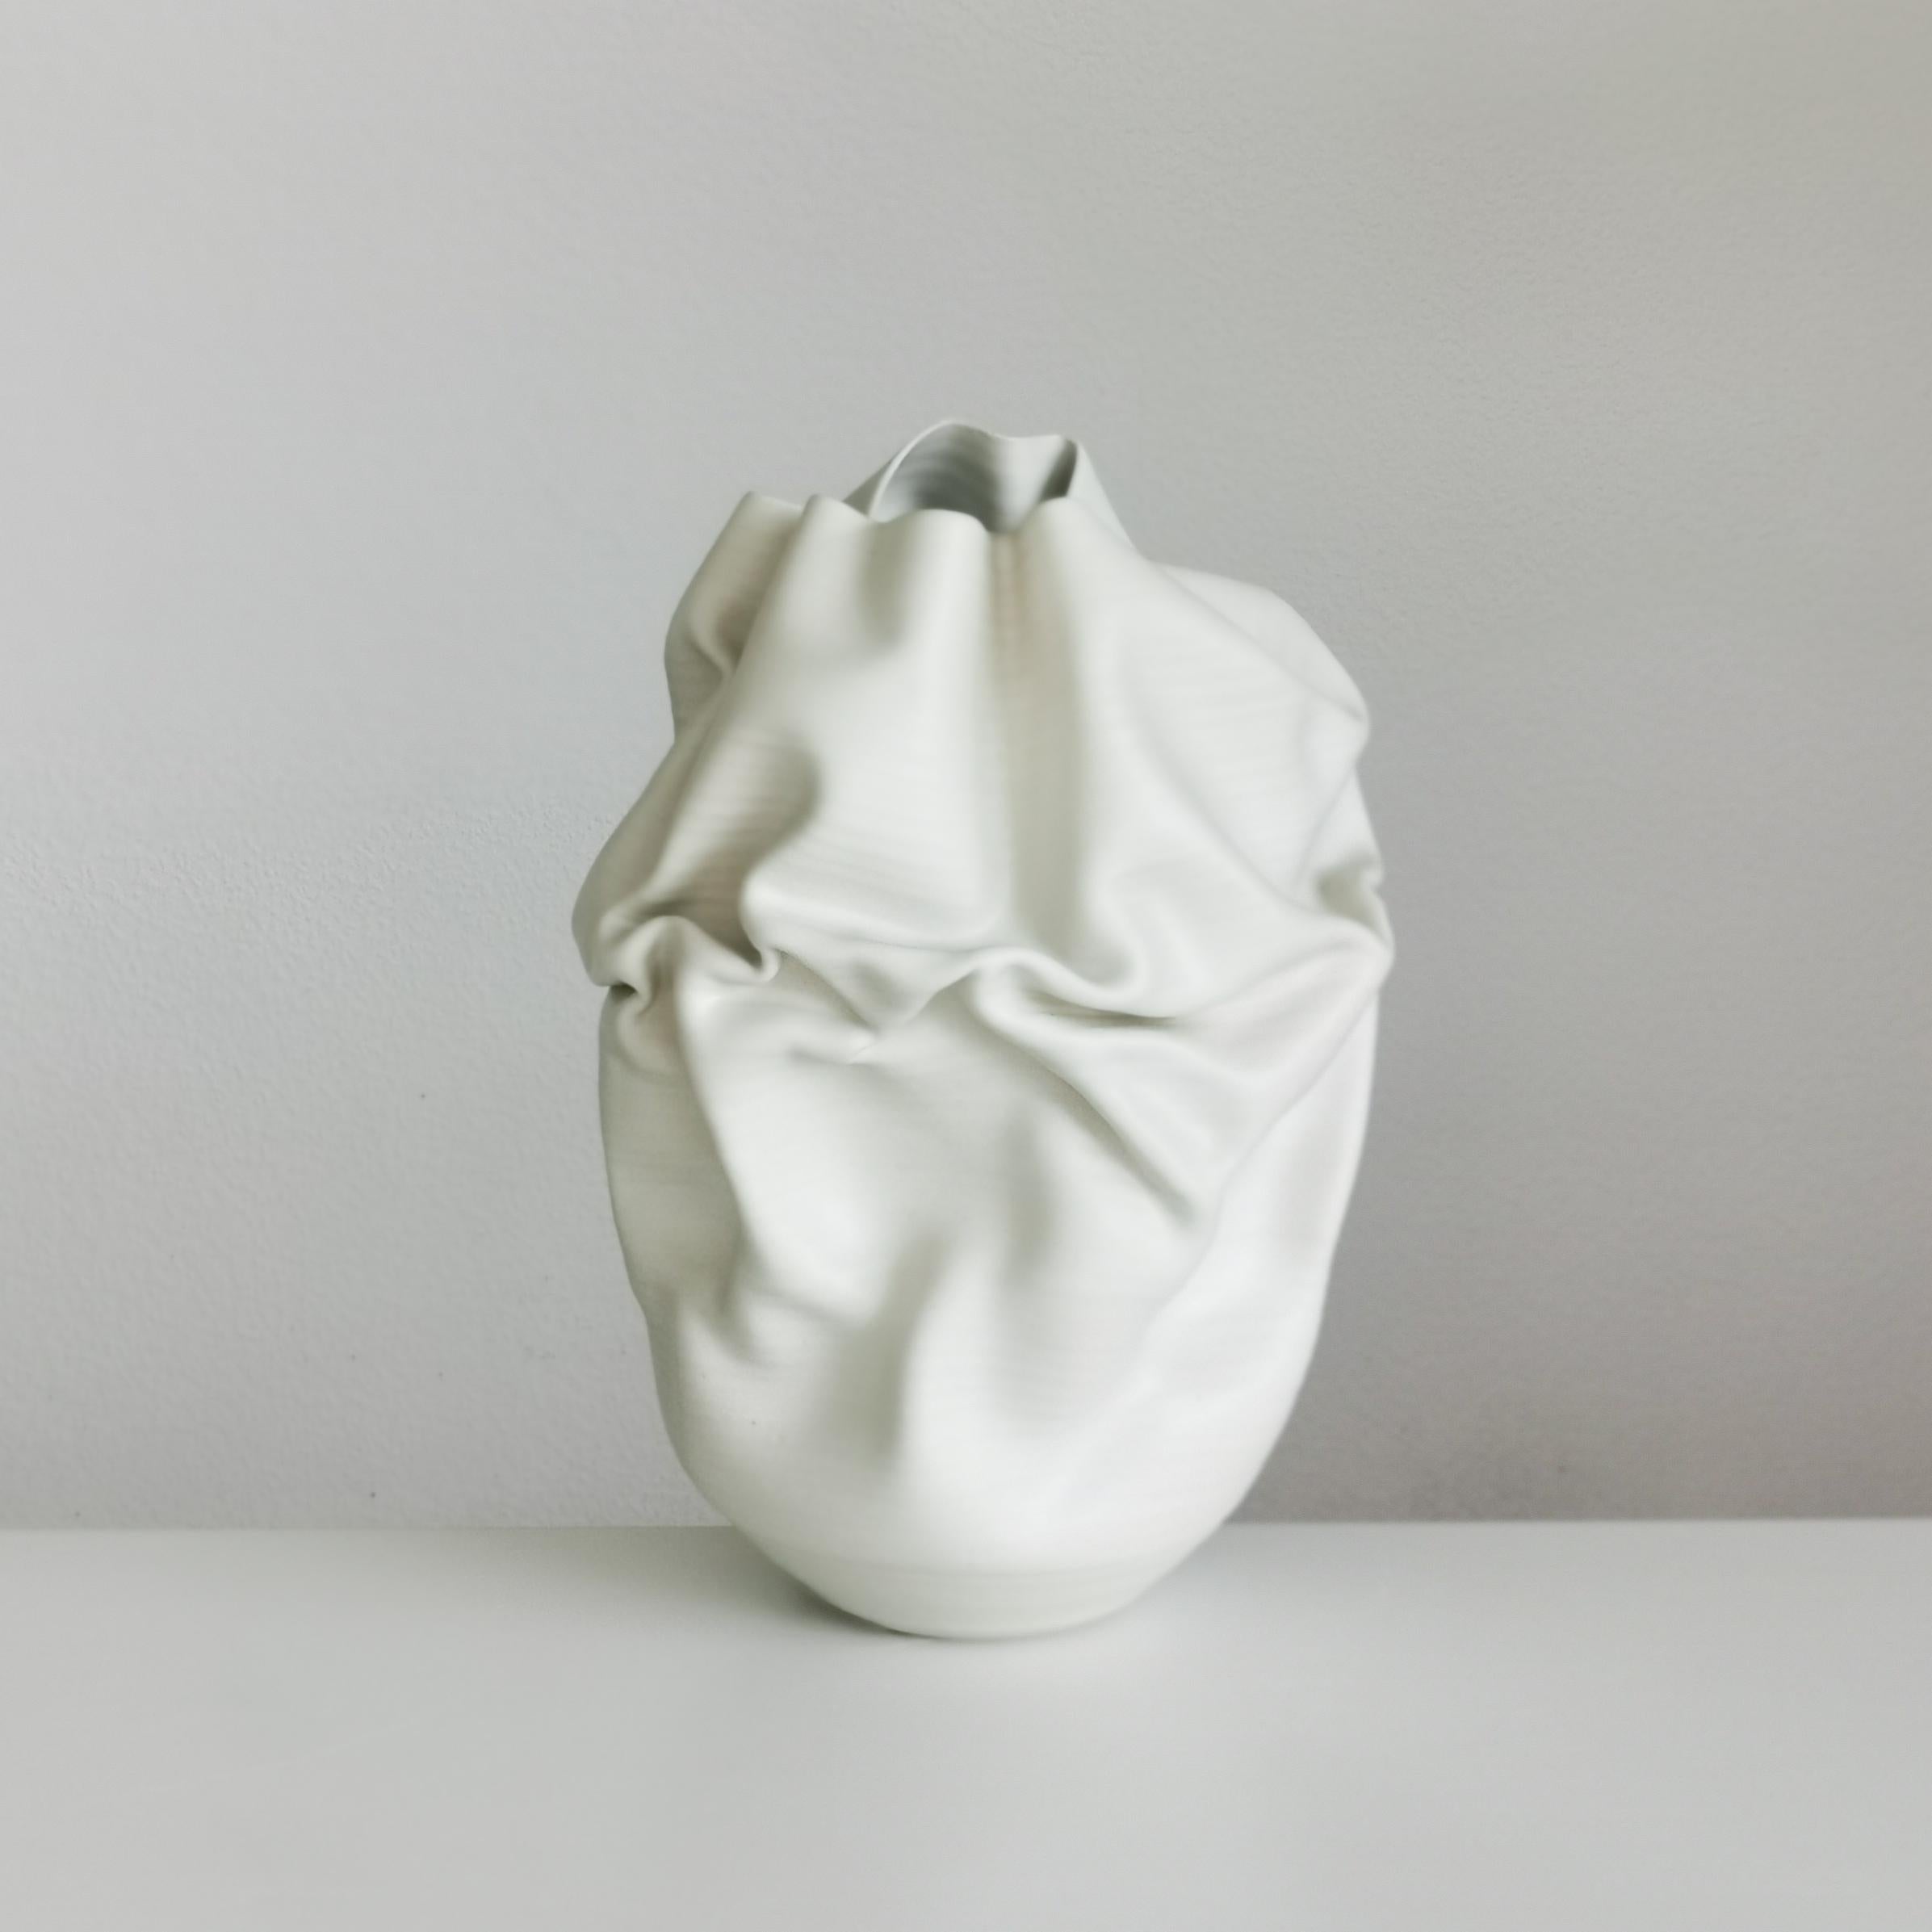 Medium Tall White Undulating Crumpled Form, Unique Ceramic Sculpture Vessel N.51 3